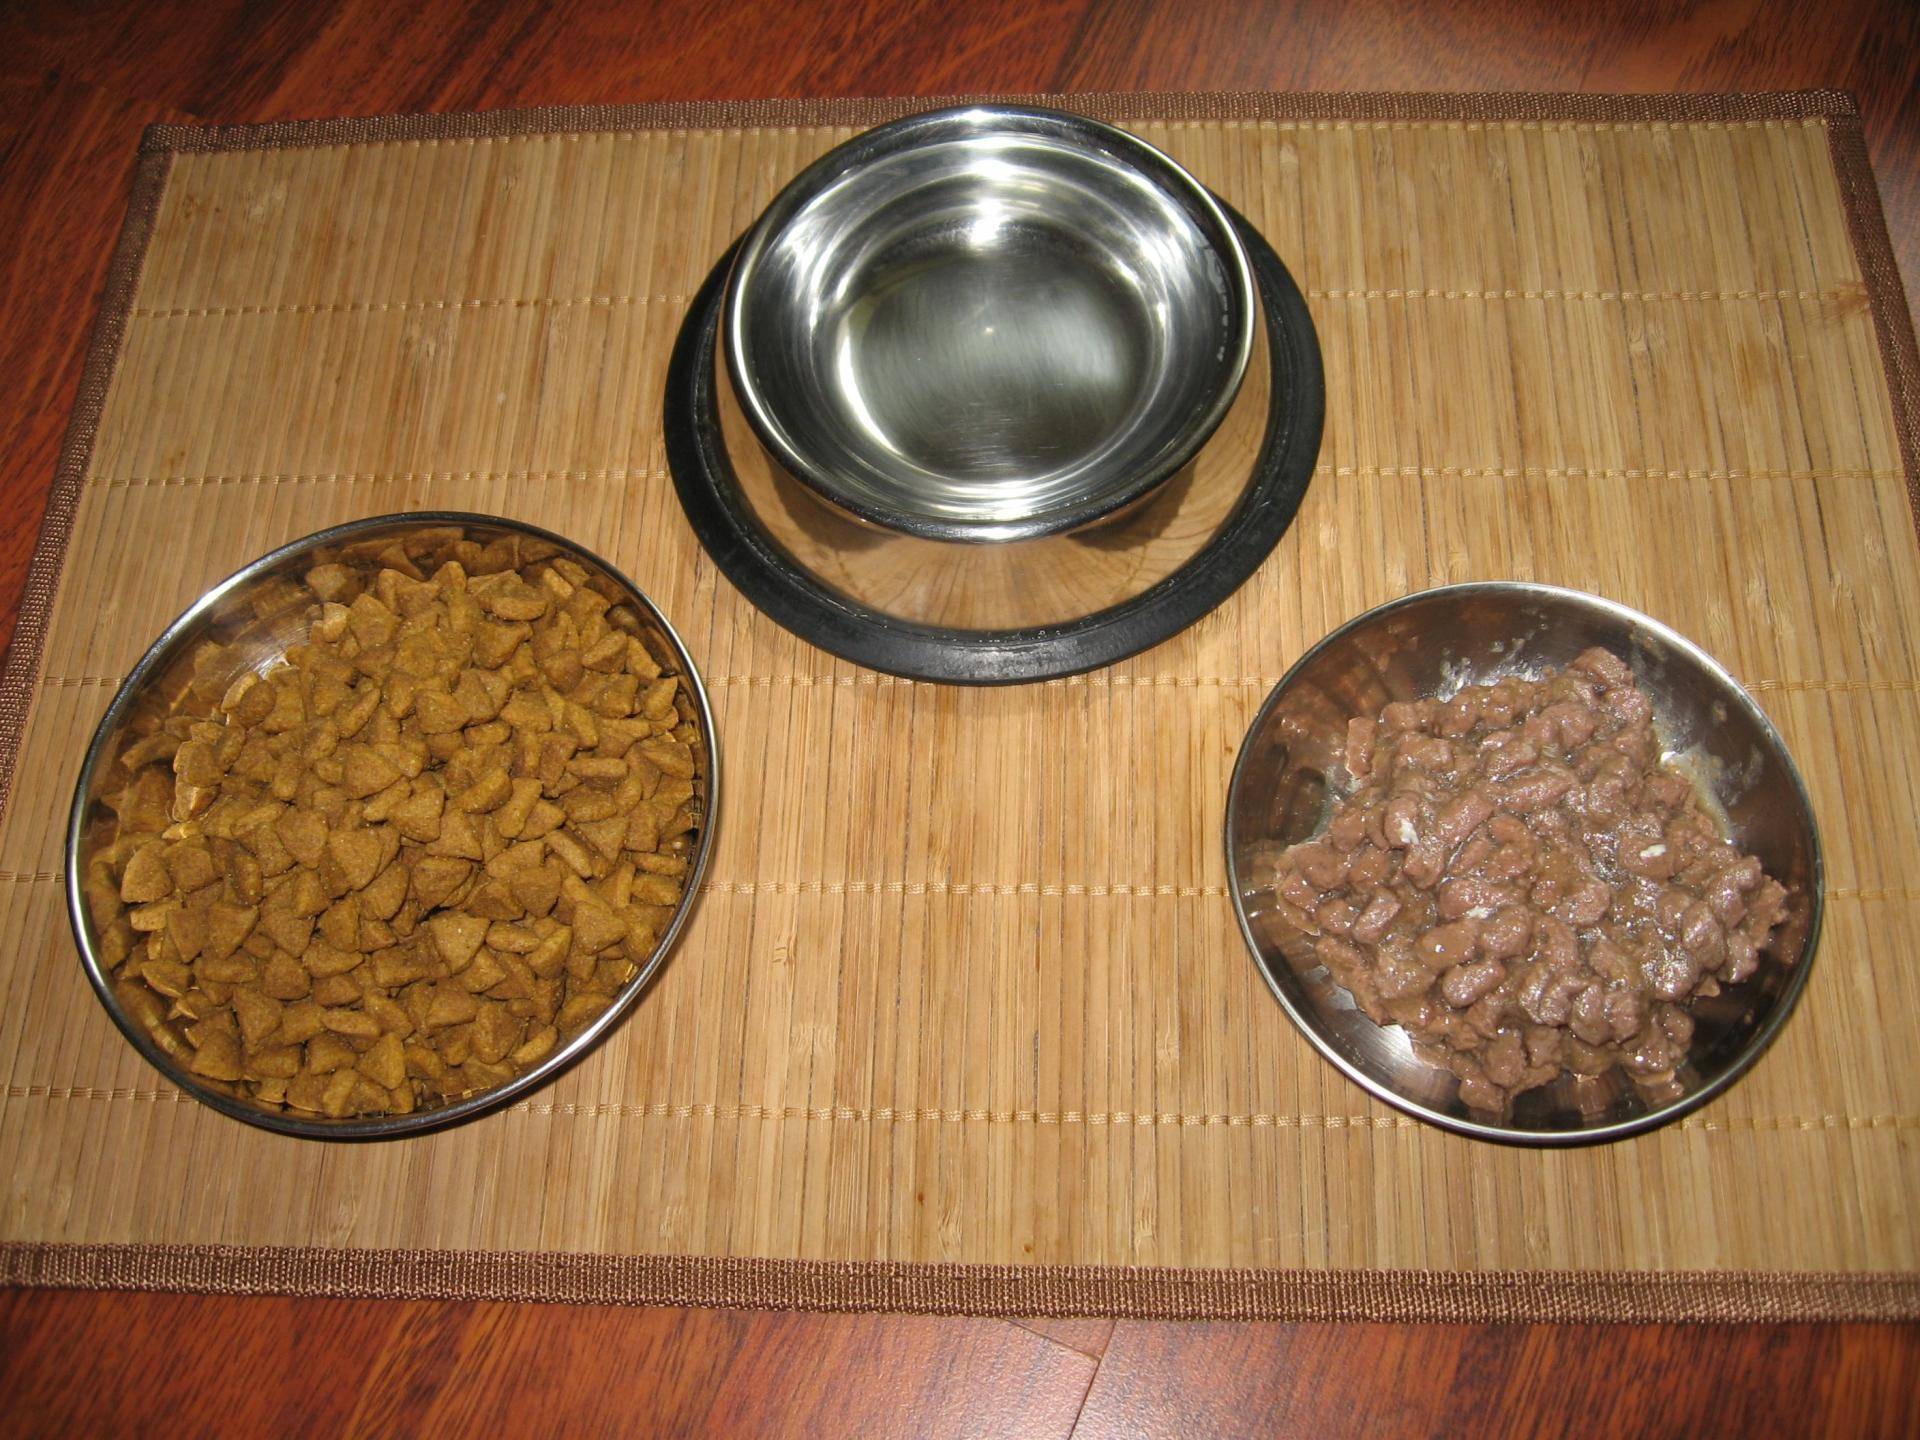 Можно ли смешивать сухие корма для собак. Натуральное питание для котов миска. Размоченный сухой корм. Миски с кормом натуралка. Натуралка для собак в миске.